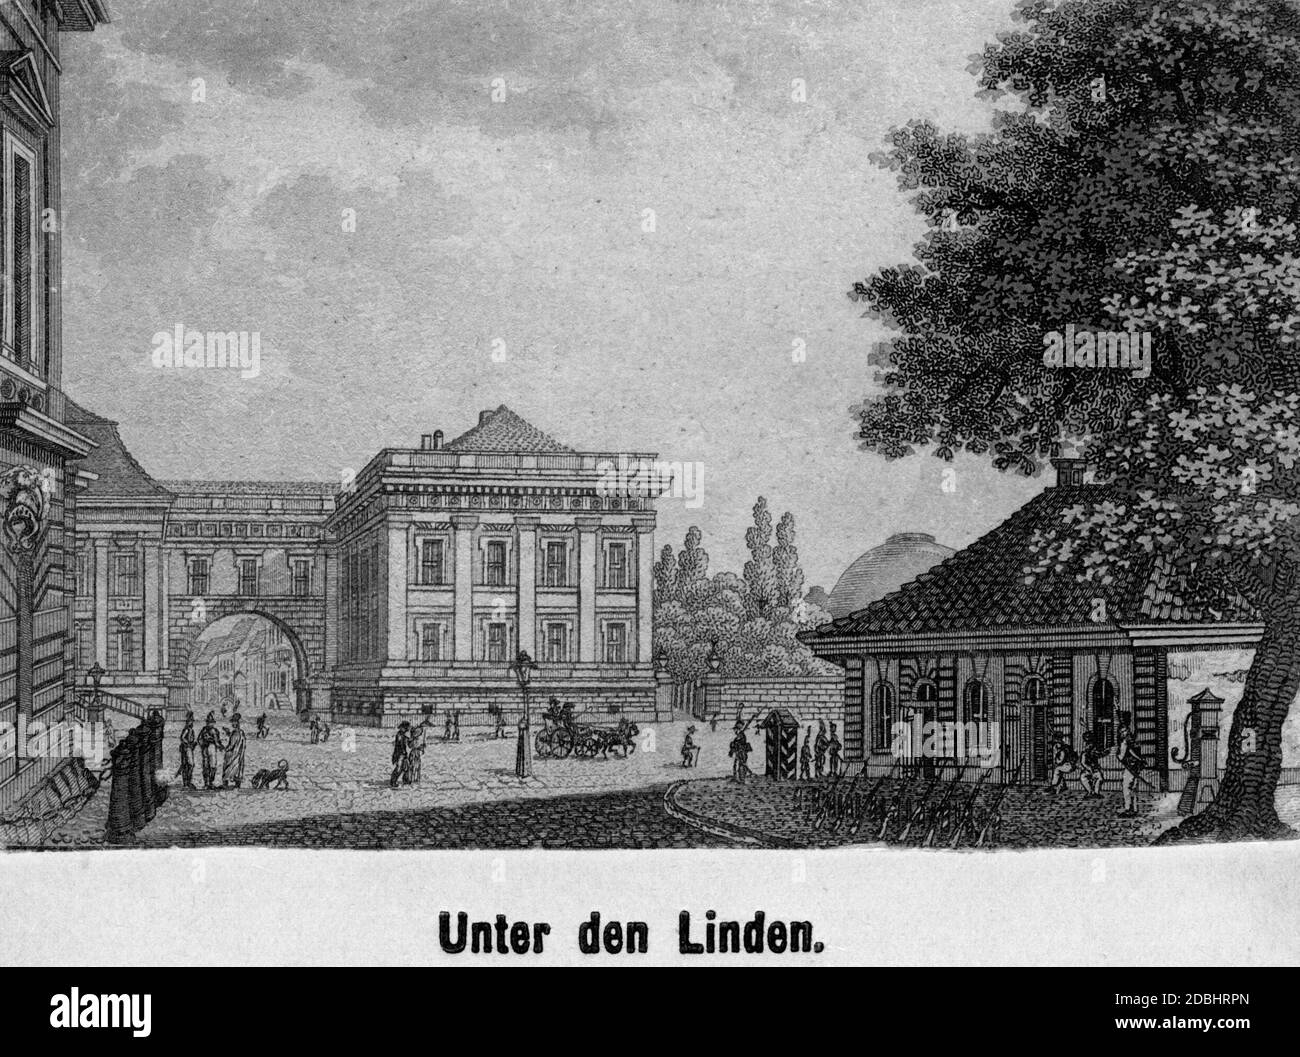 Ce dessin non daté, réalisé dans la première moitié du XIXe siècle, montre la rue Unter den Linden à Berlin avec un garde-vue et des soldats (à droite). Banque D'Images